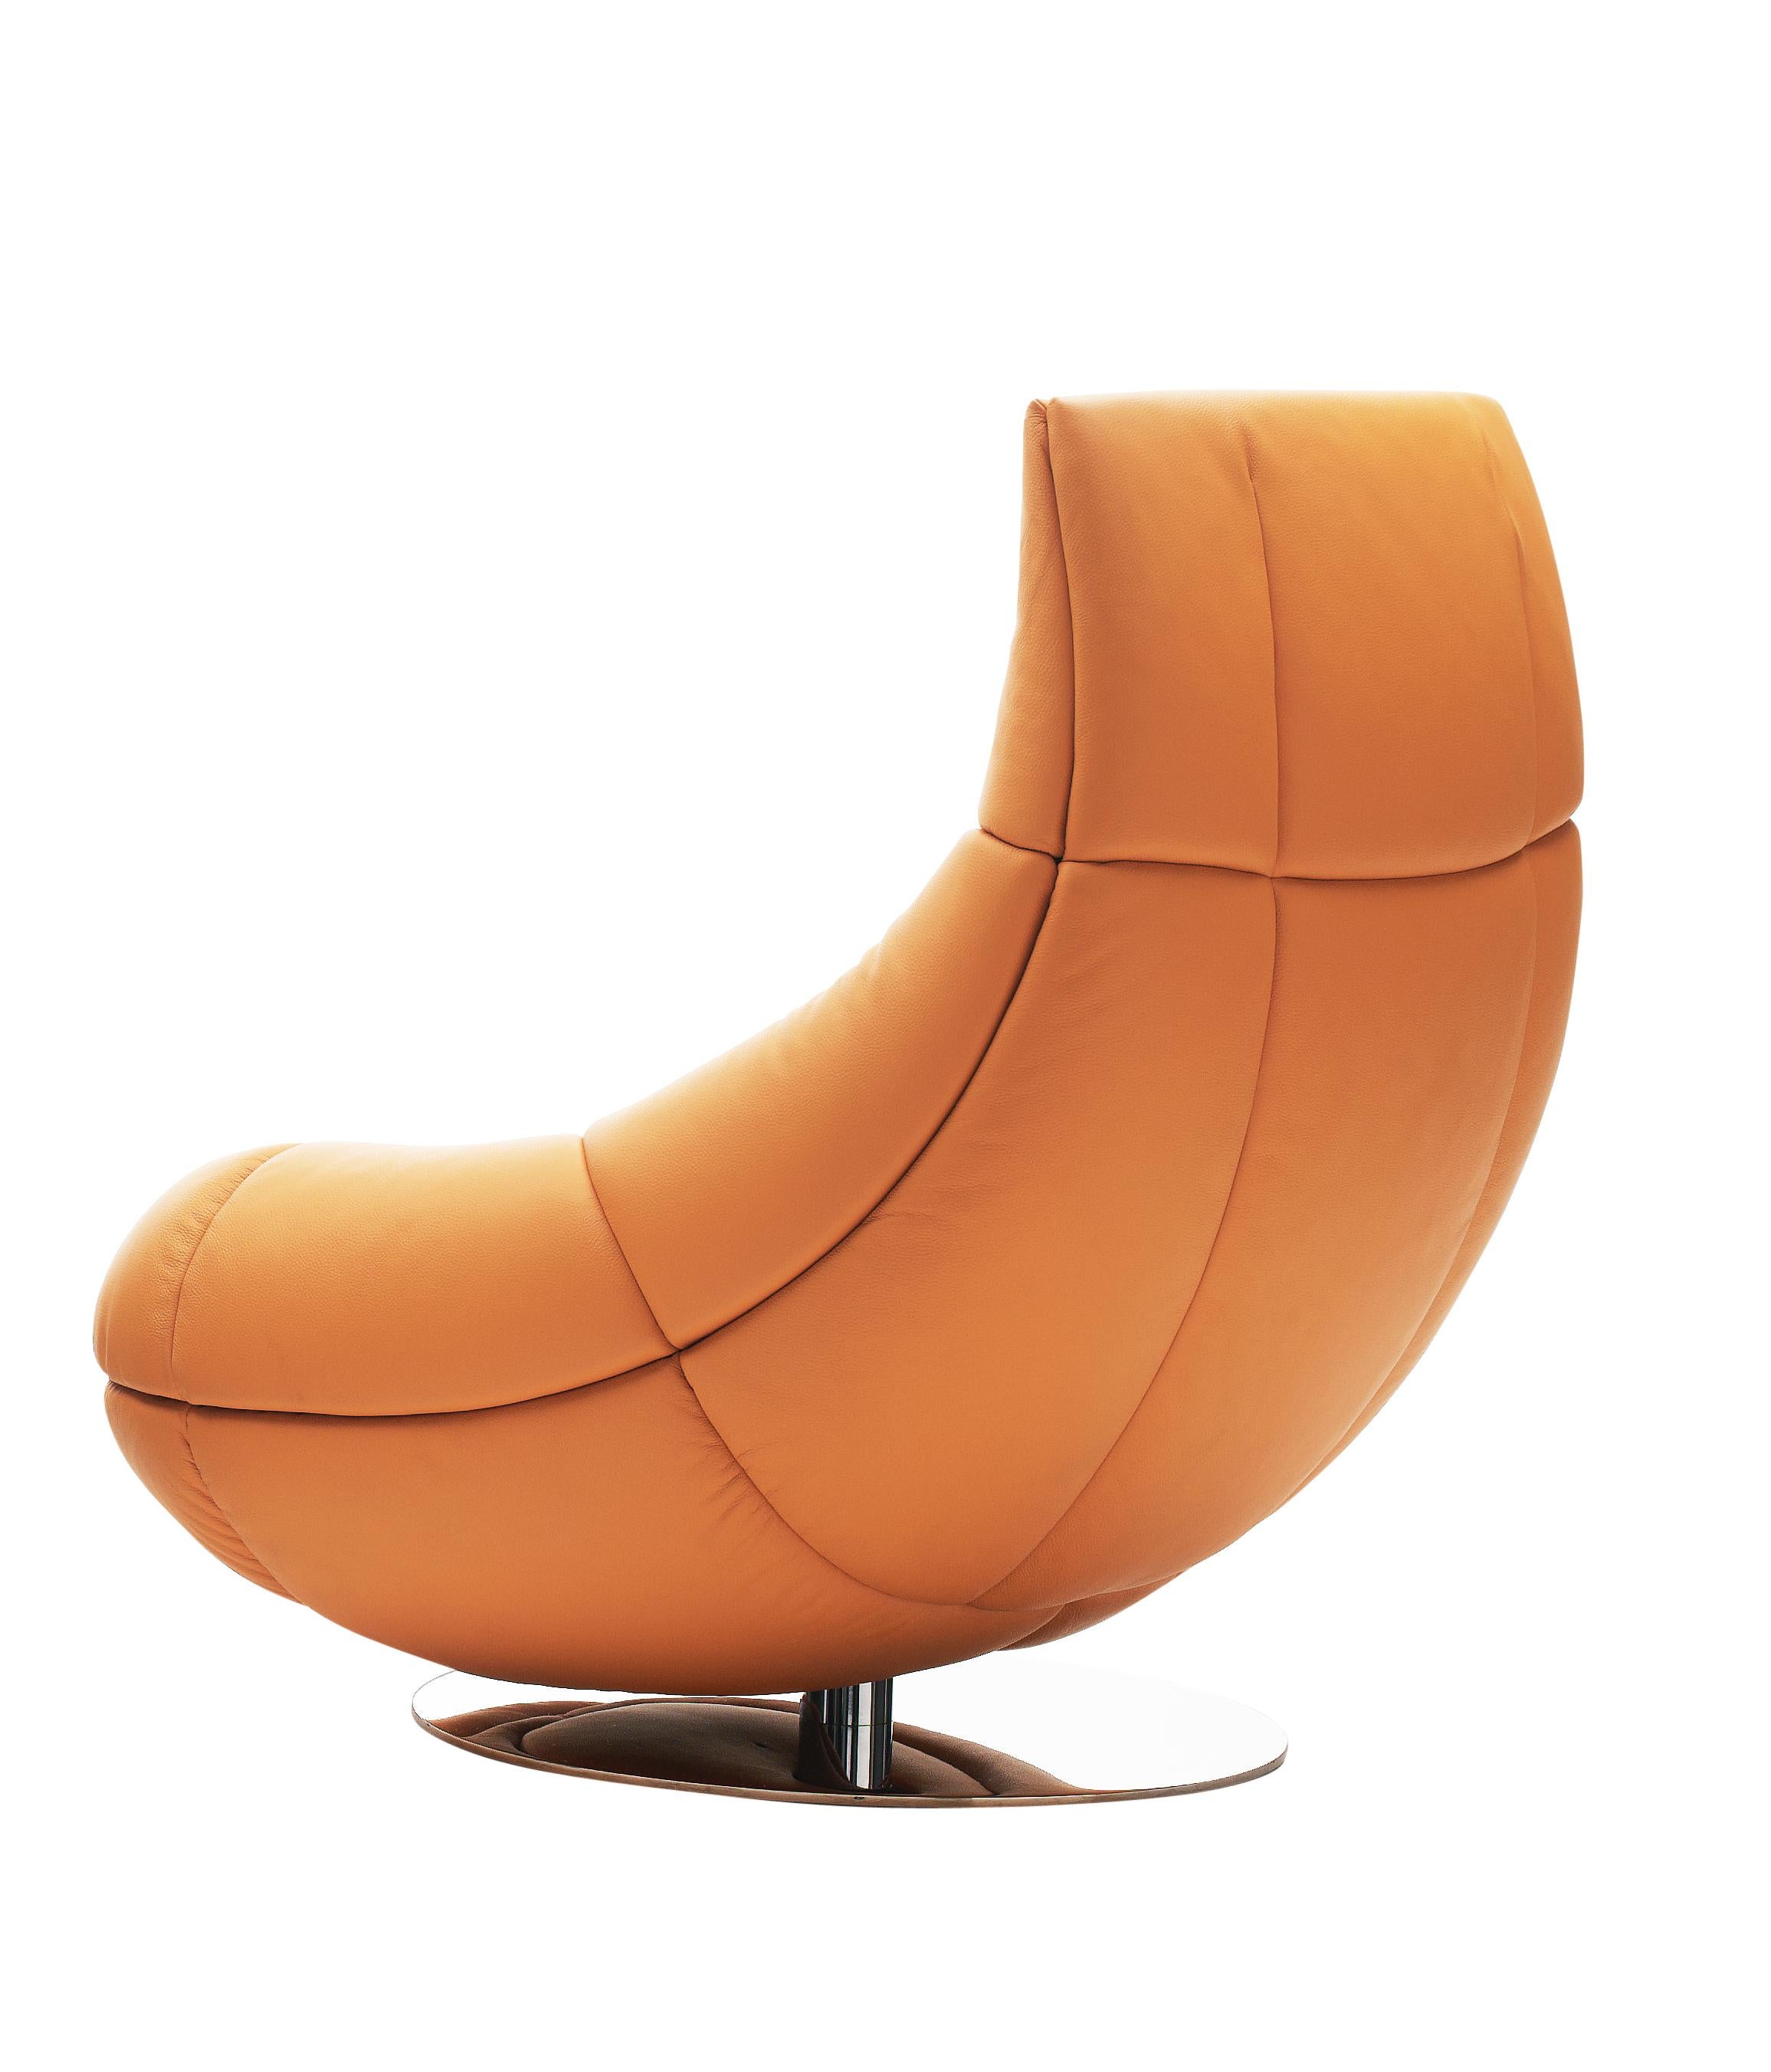 Orange (Teak) De Sede Swivel Lounge Chair with Tilt by Hugo De Ruiter